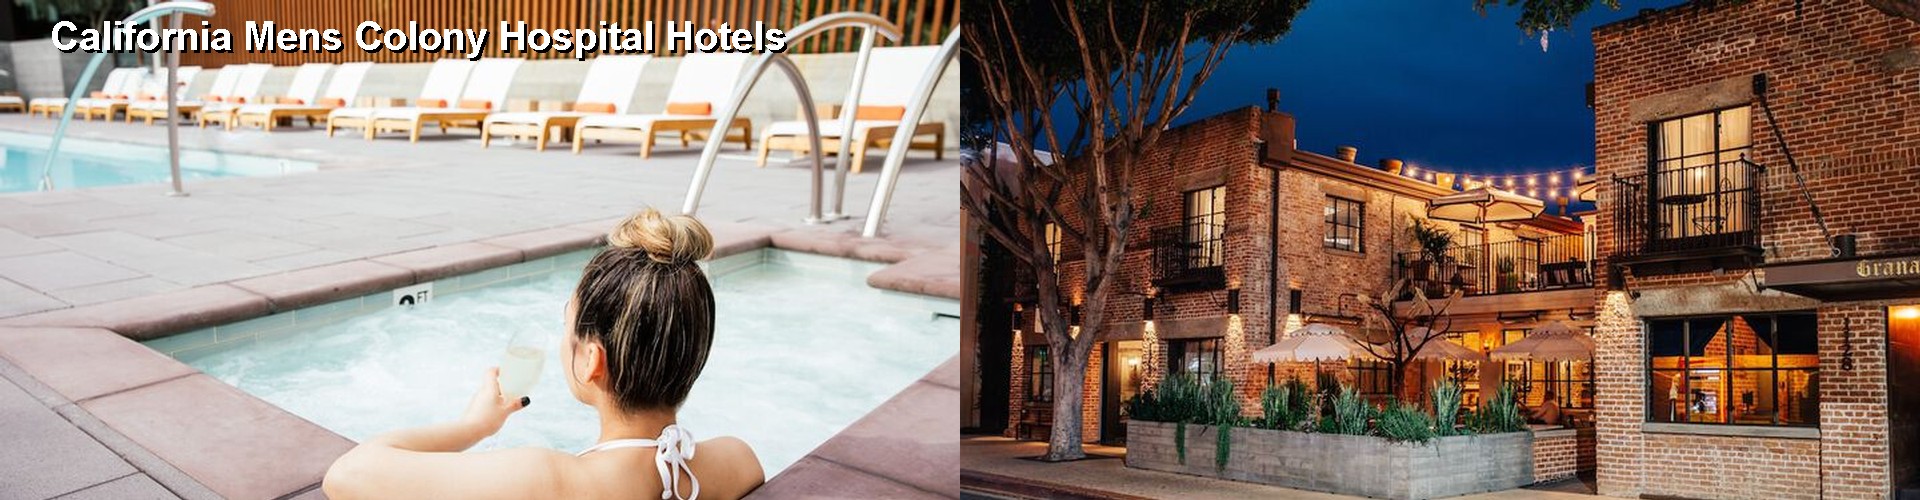 3 Best Hotels near California Mens Colony Hospital